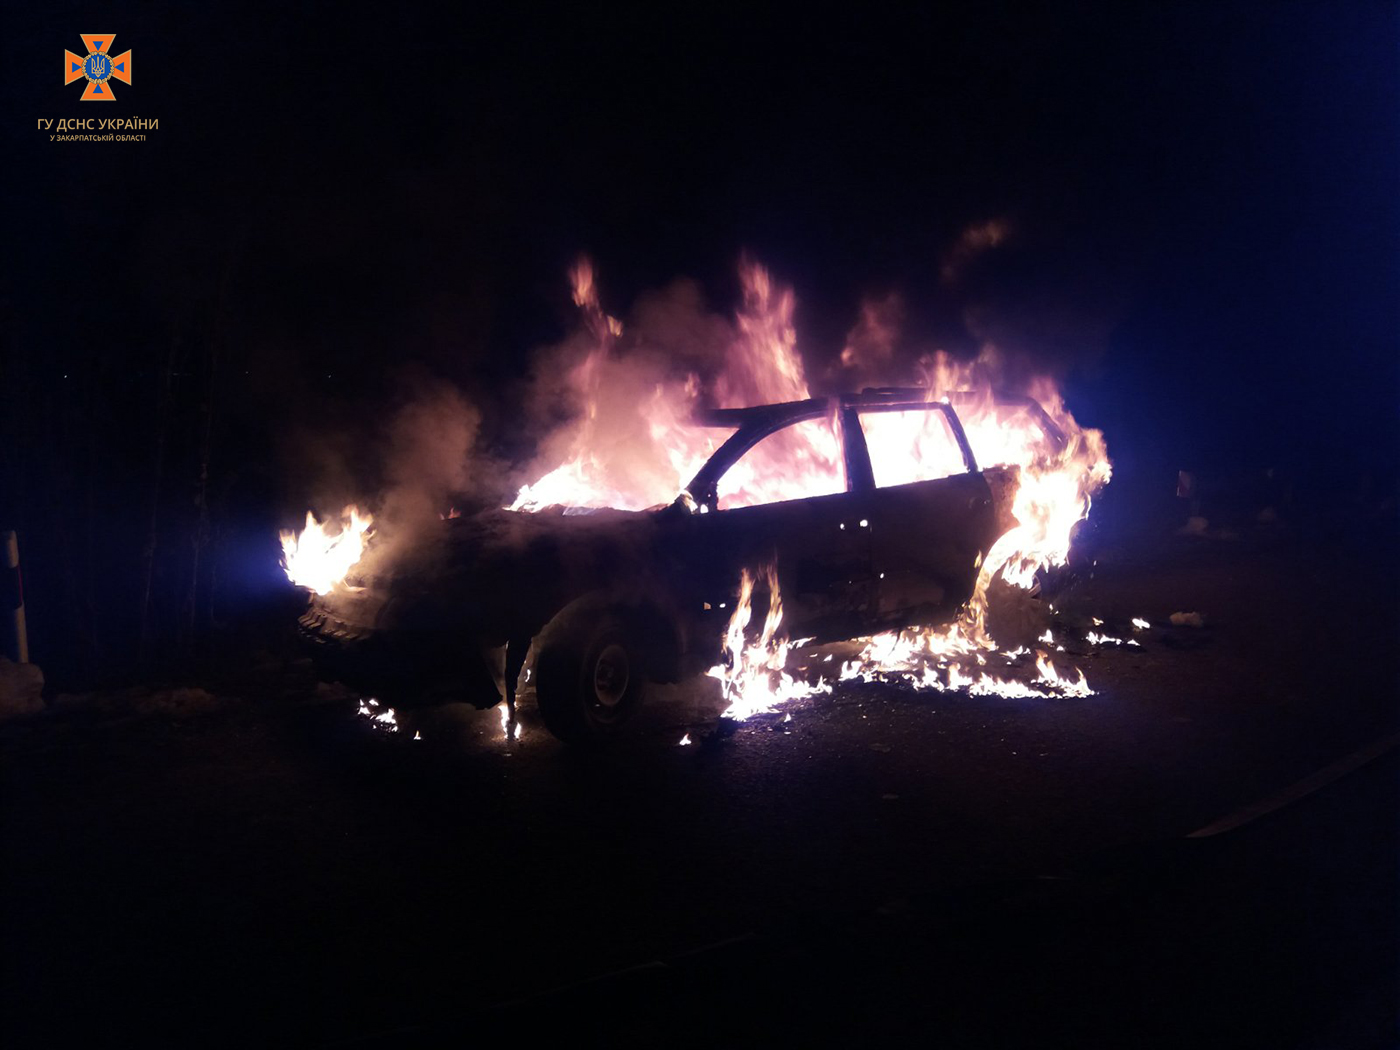  У Велятині у жителя Івано-Франківської області на ходу загорілася вантажівка 0